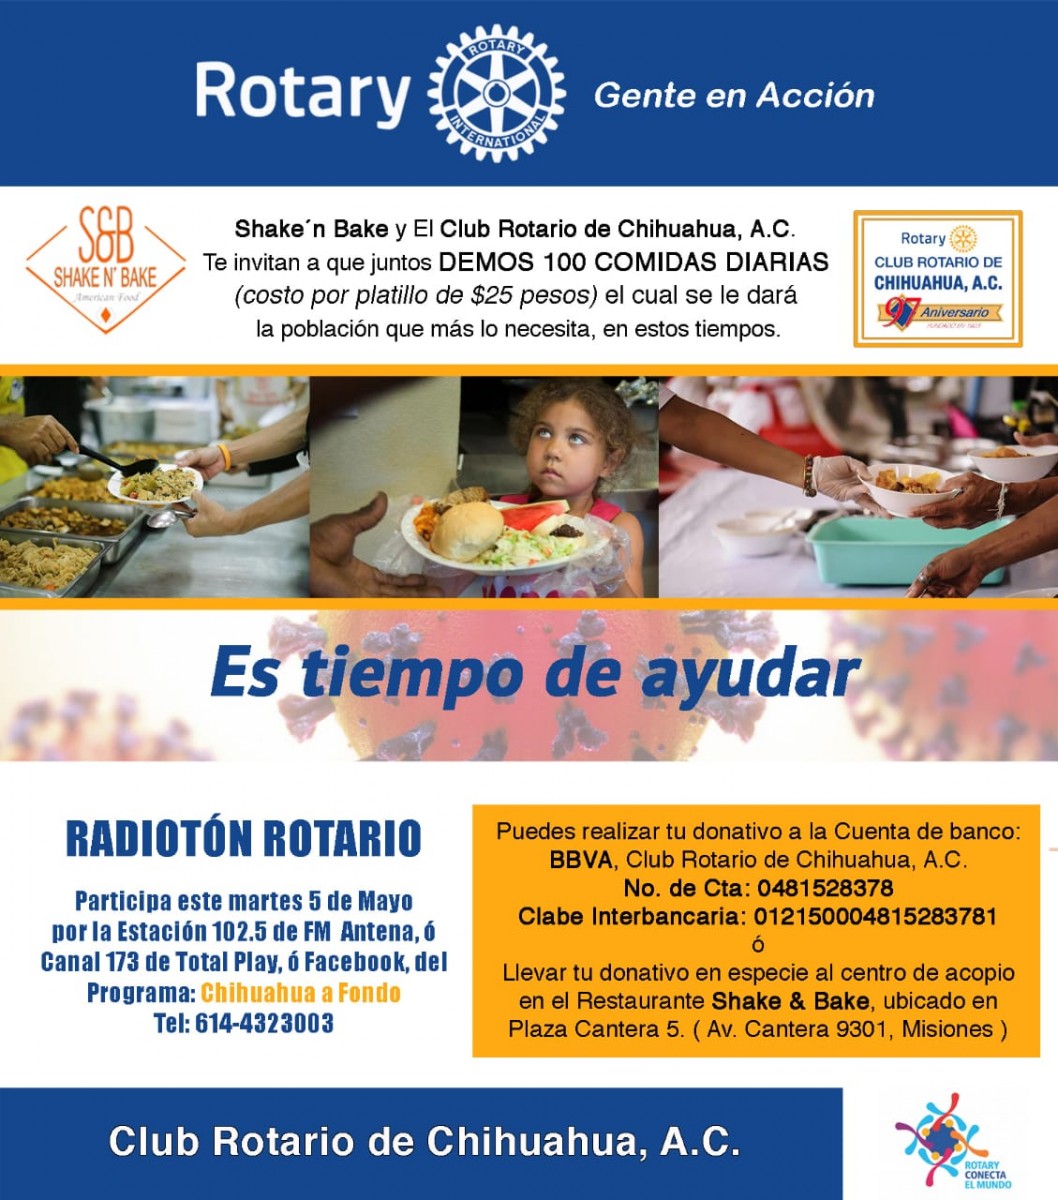 Club Rotario de Chihuahua invita al radiotón | Omnia